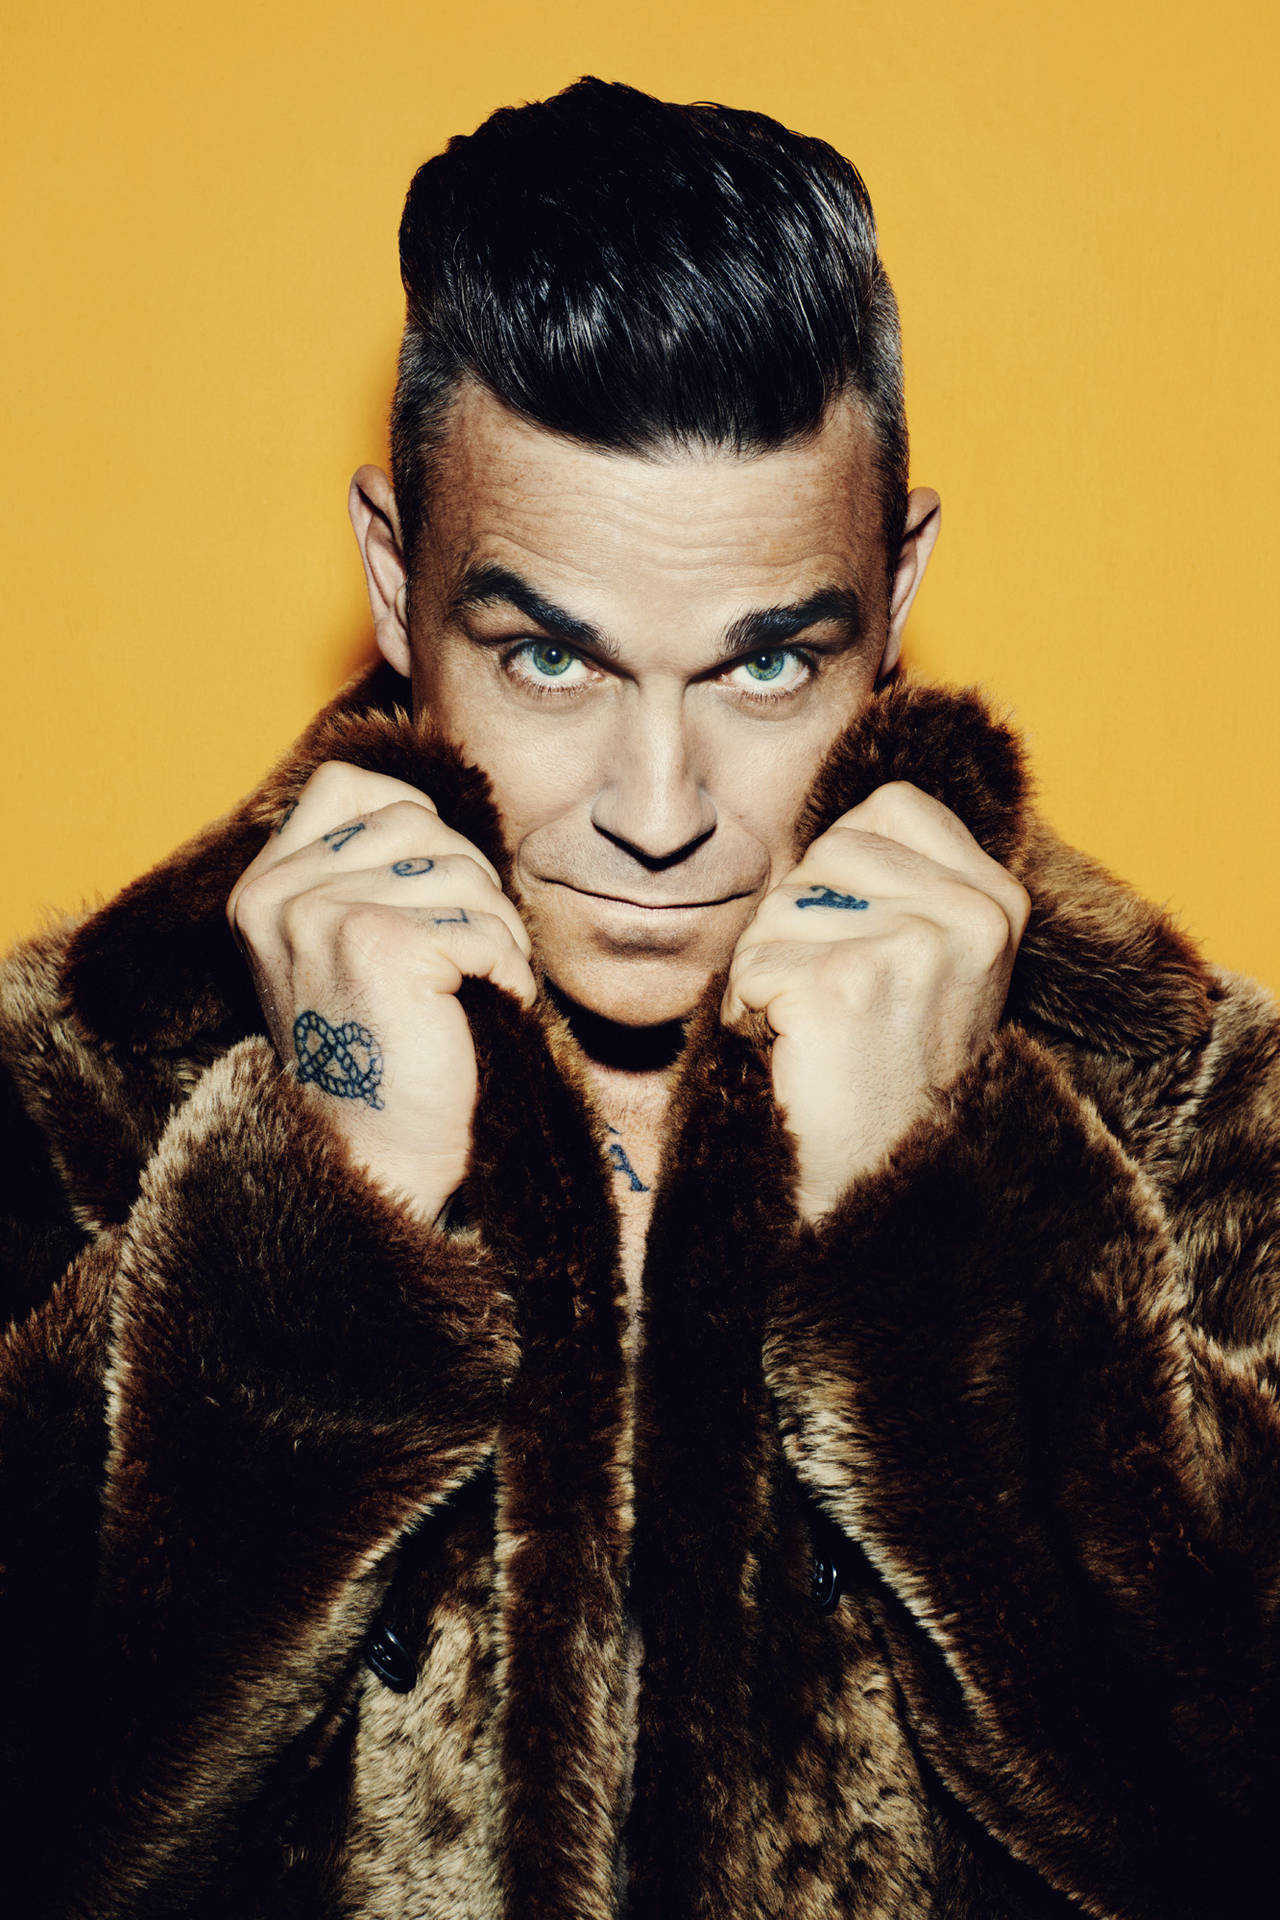 Enfermedad. El cantante Robbie Williams habló sobre su salud, quien tuvo que suspender su gira y estar en cuidados intensivos.